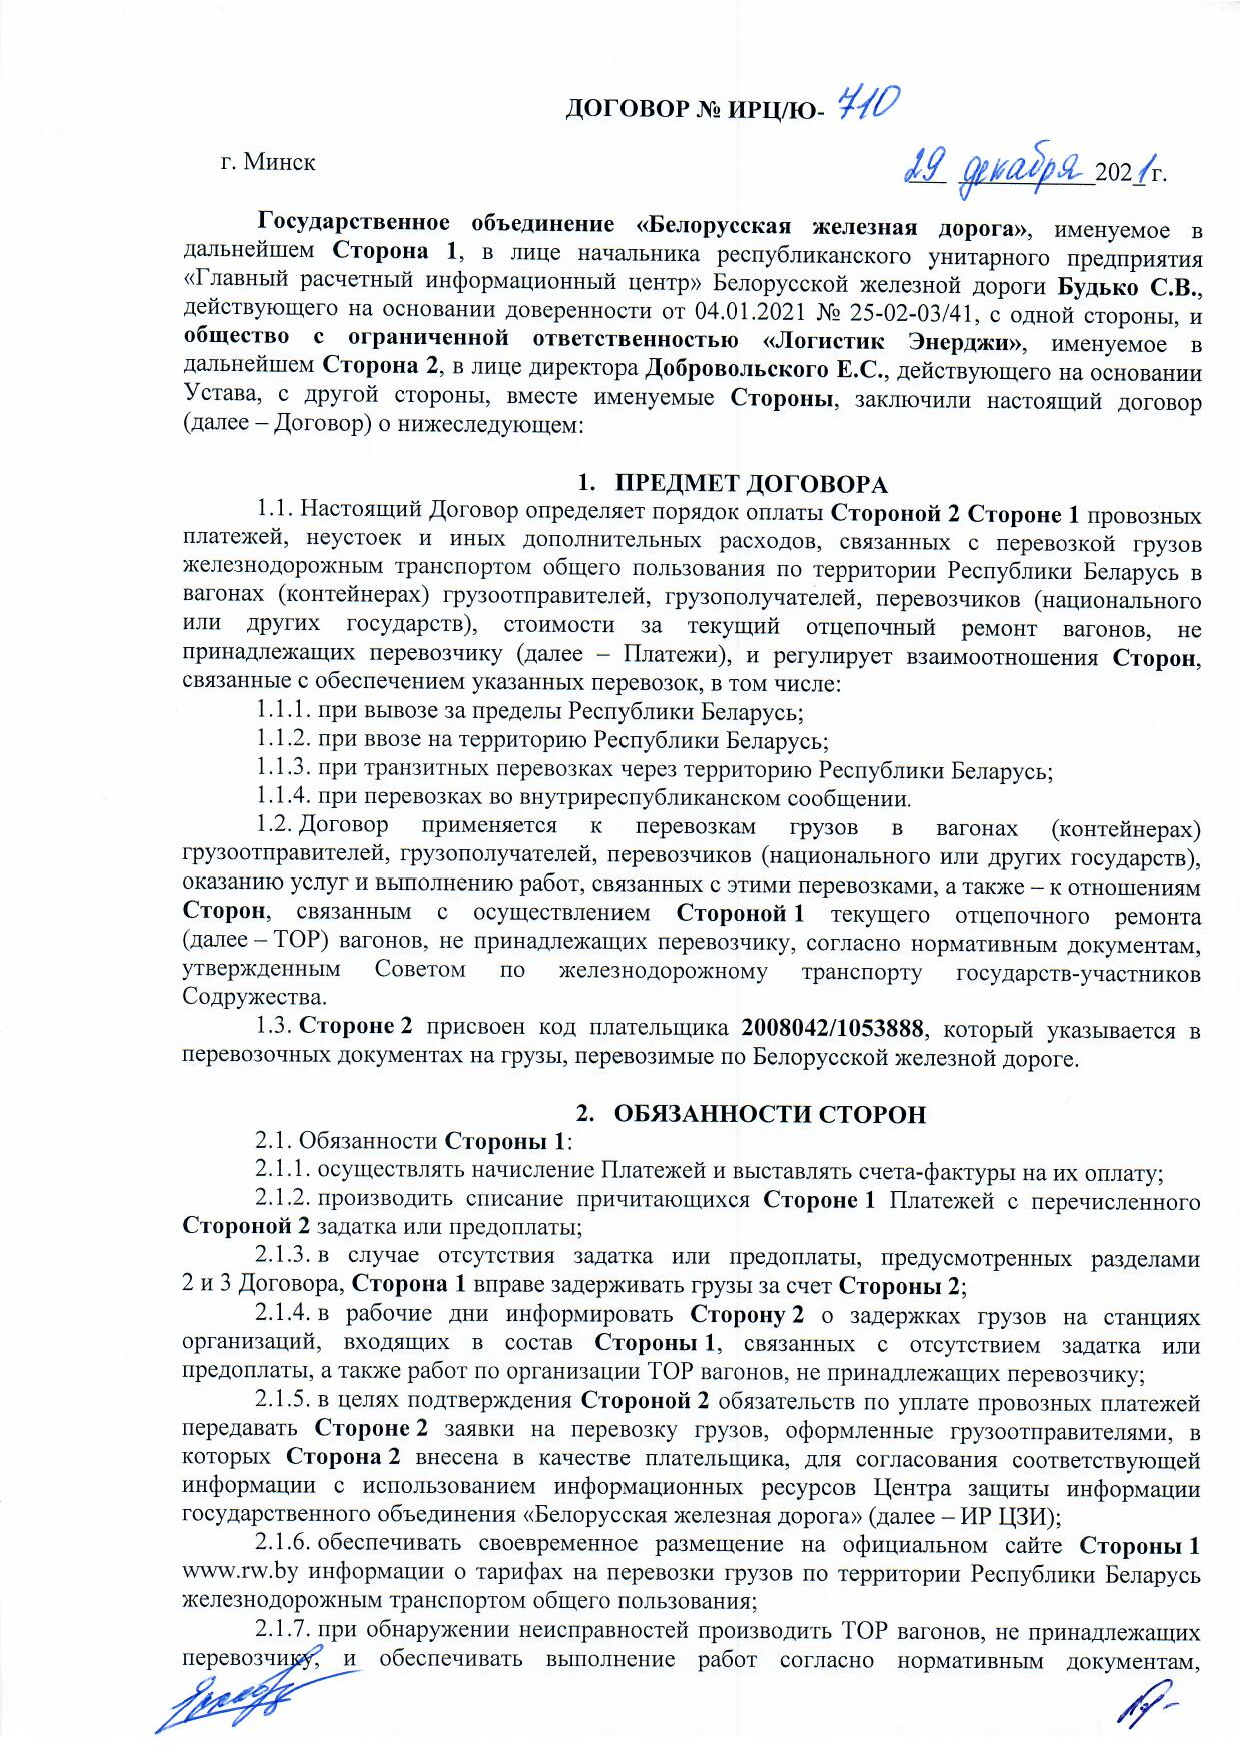 Договор между БЖД и ООО «Логистик Энерджи» от 29.11.2021 № ИРЦ/Ю-710 (Страница 1)